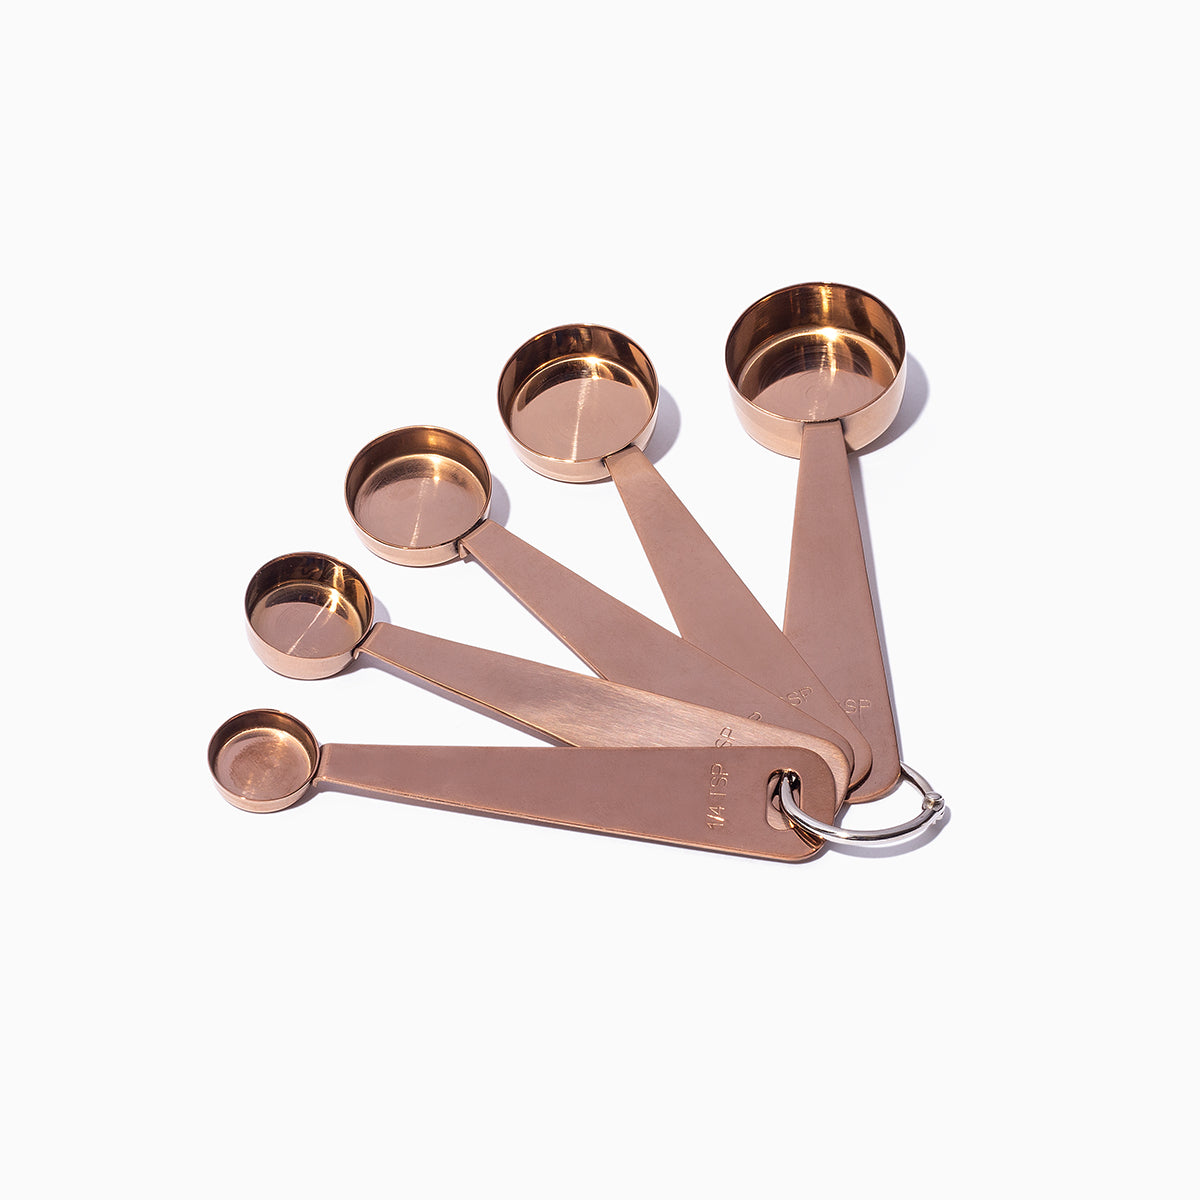 Measuring Spoons - Heavy Duty Narrow Copper Set of 6 (Retail) – VanillaPura